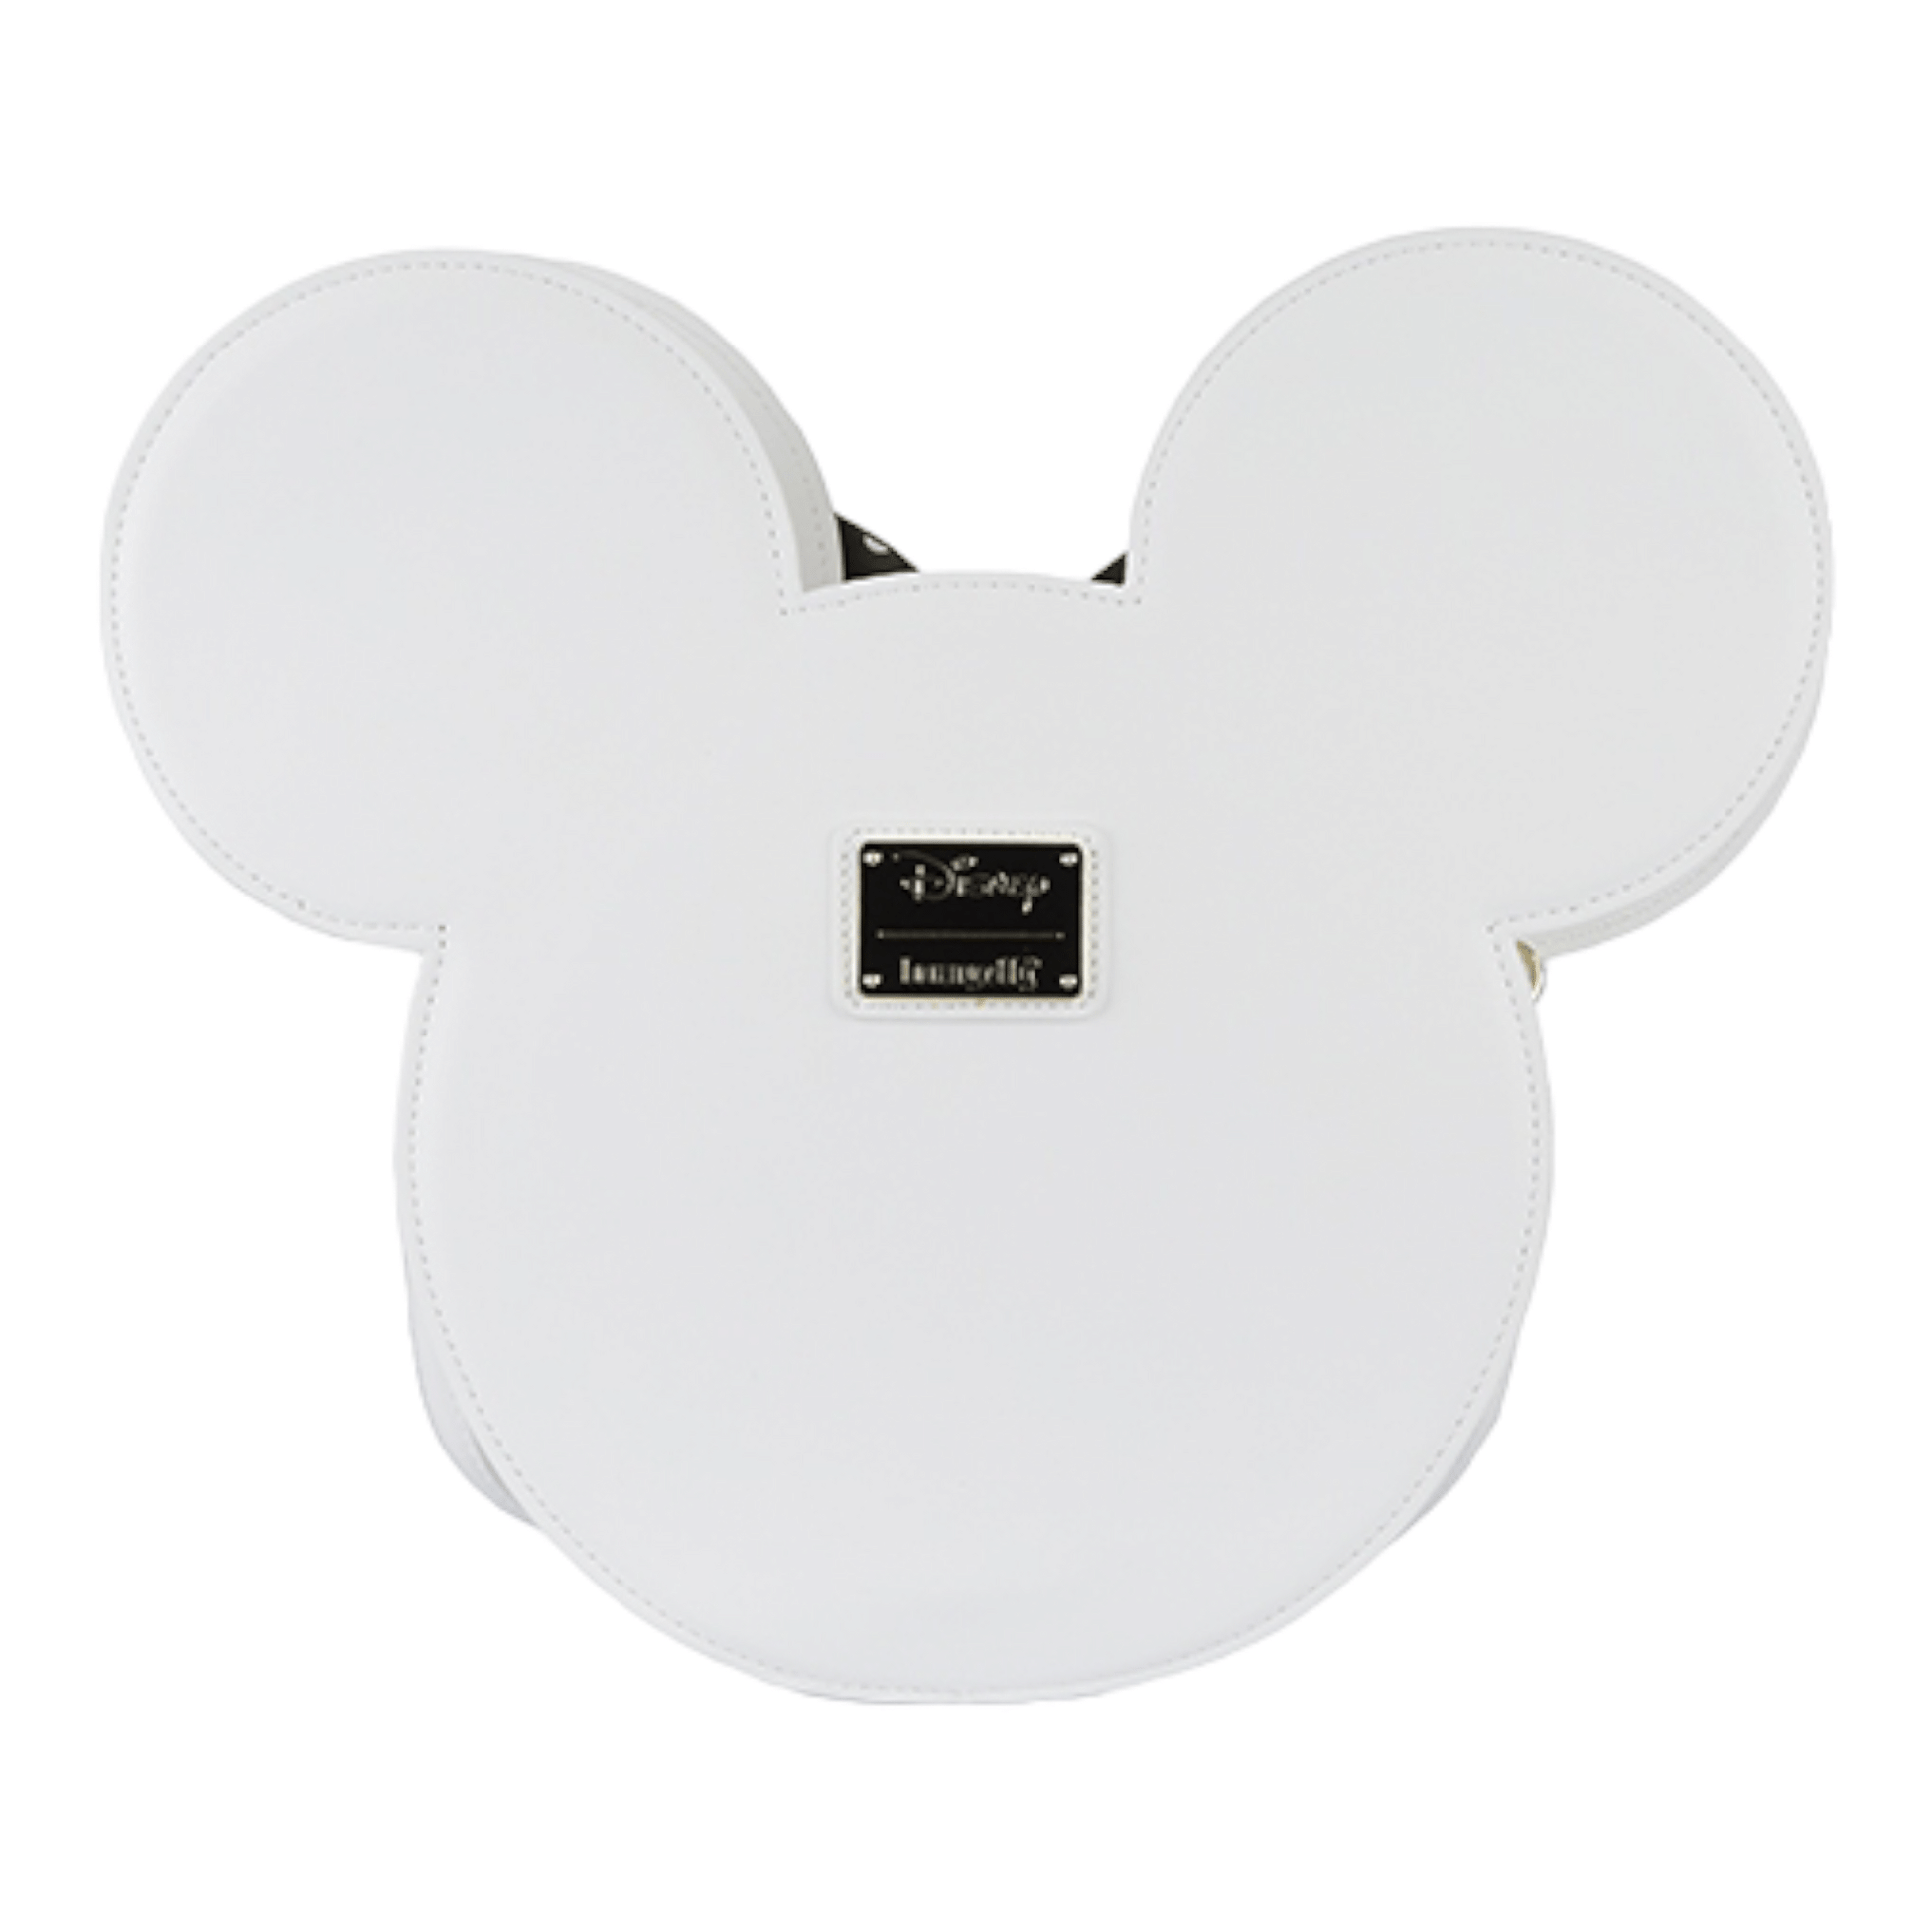 Sac à main - Minnie Mouse Daisy - Disney - Loungefly J'M T Créa